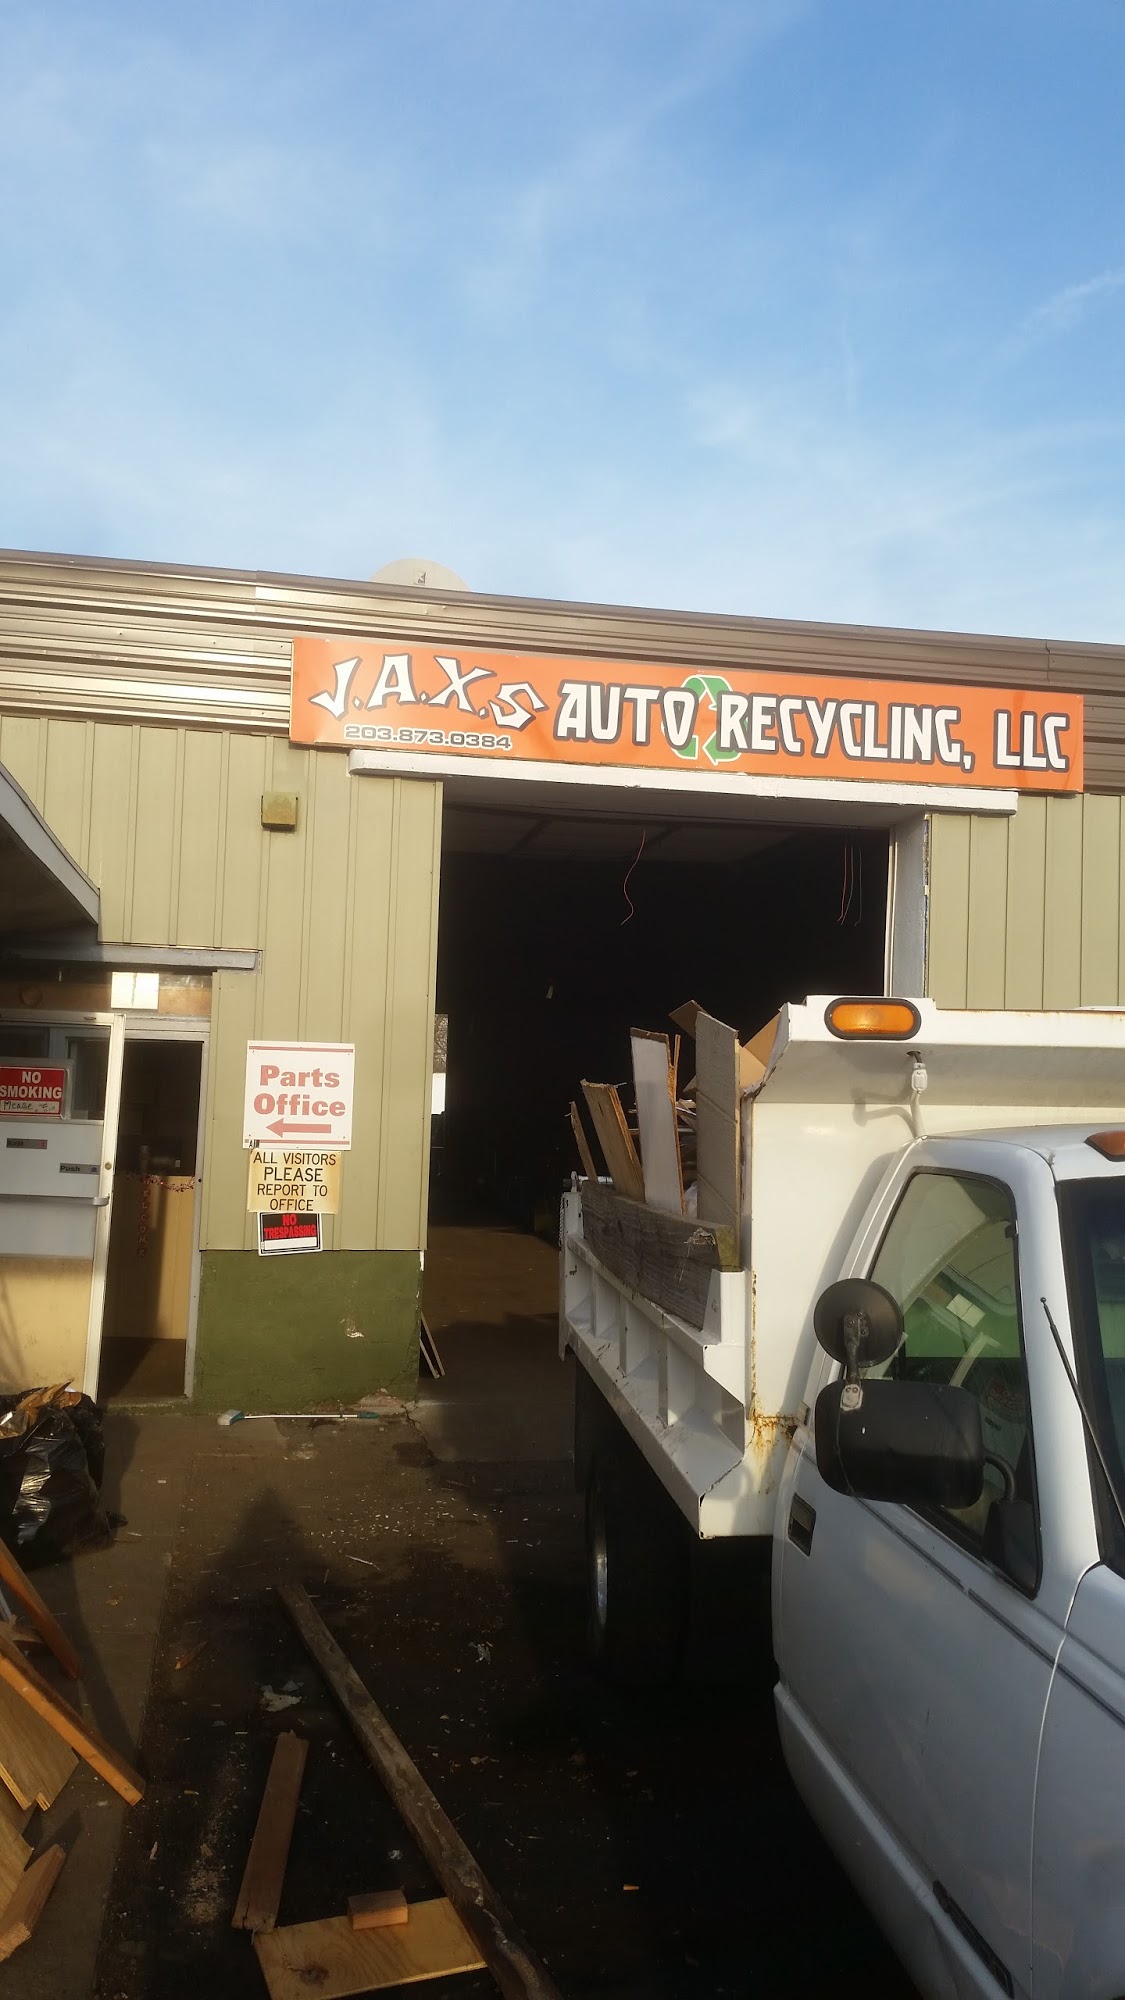 J.A.X.S Auto Recycling